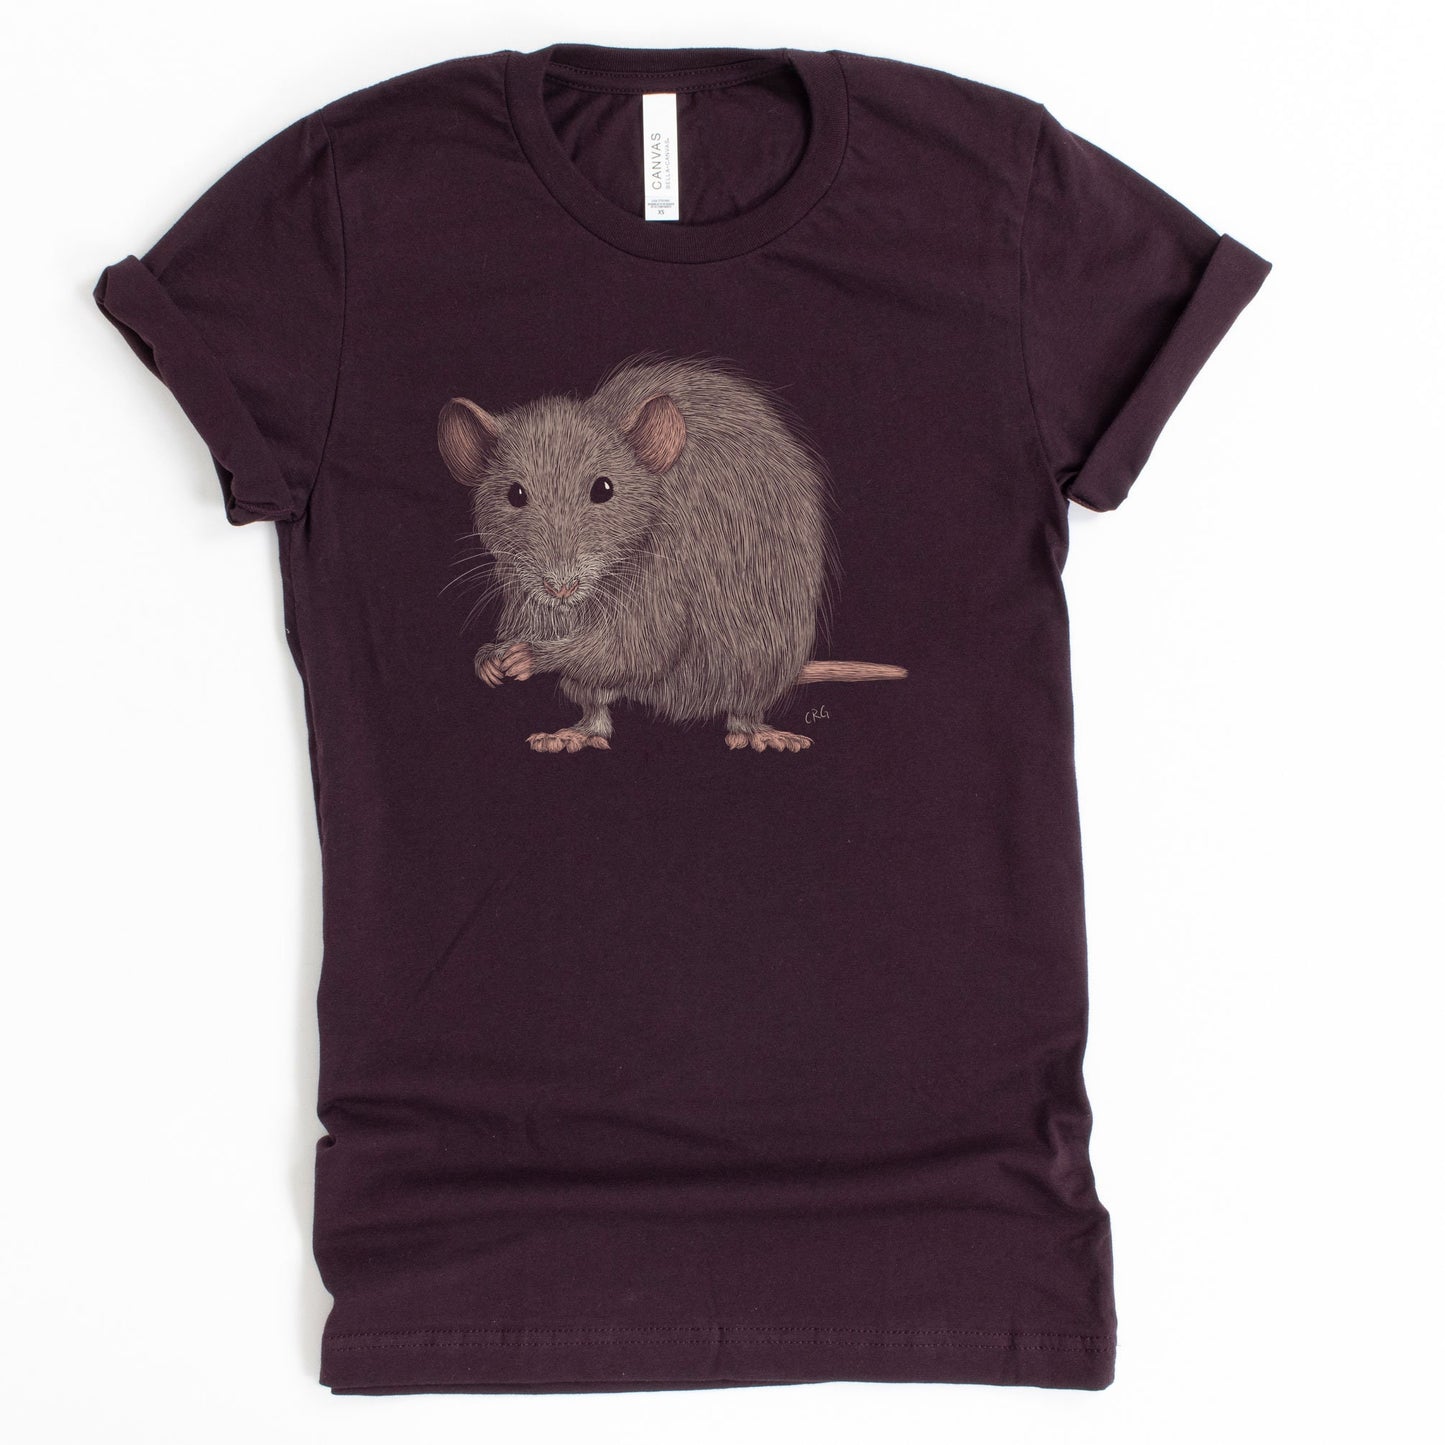 Rat Shirt